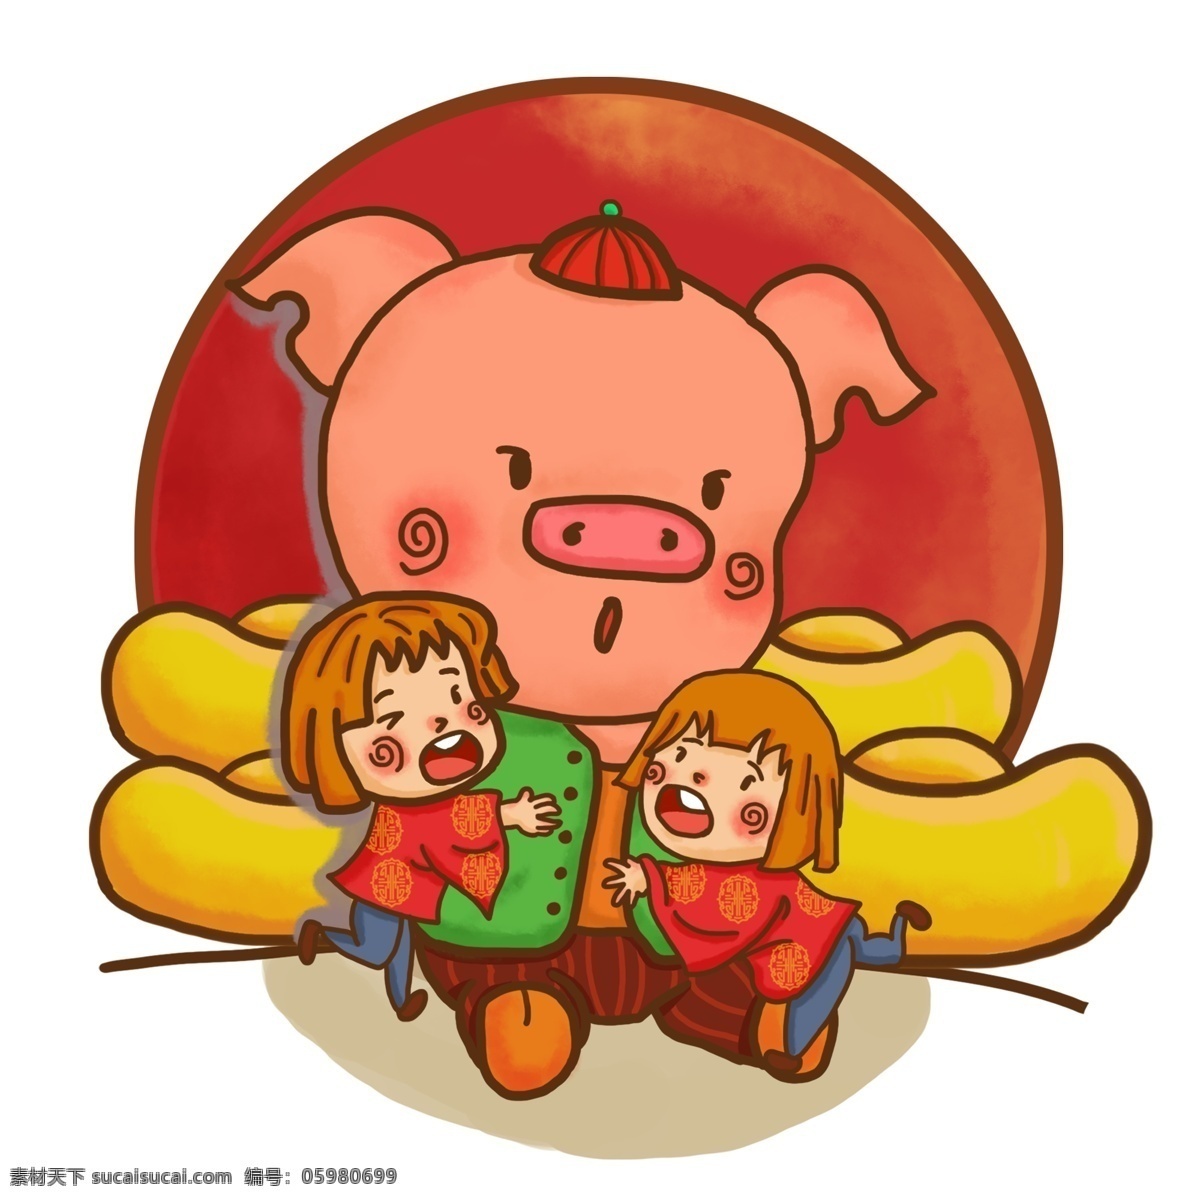 2019 新春 佳节 猪年 快乐 合家欢乐 财源滚滚 恭喜发财 可爱猪 金元宝 幸福 两个小姐妹